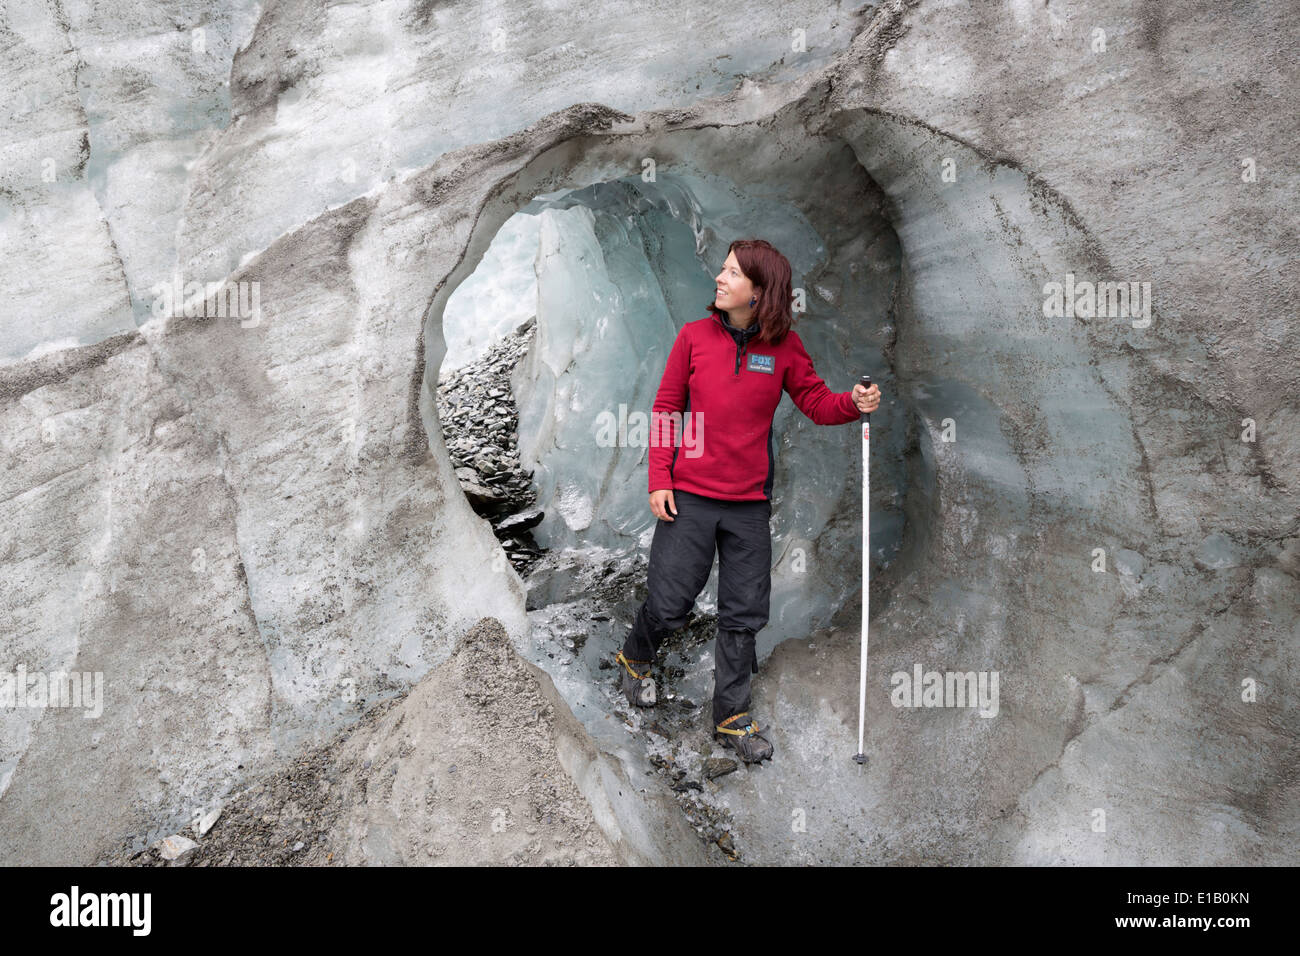 Tunnel de glacier, Fox Glacier, côte ouest, île du Sud, Nouvelle-Zélande, Pacifique Sud Banque D'Images